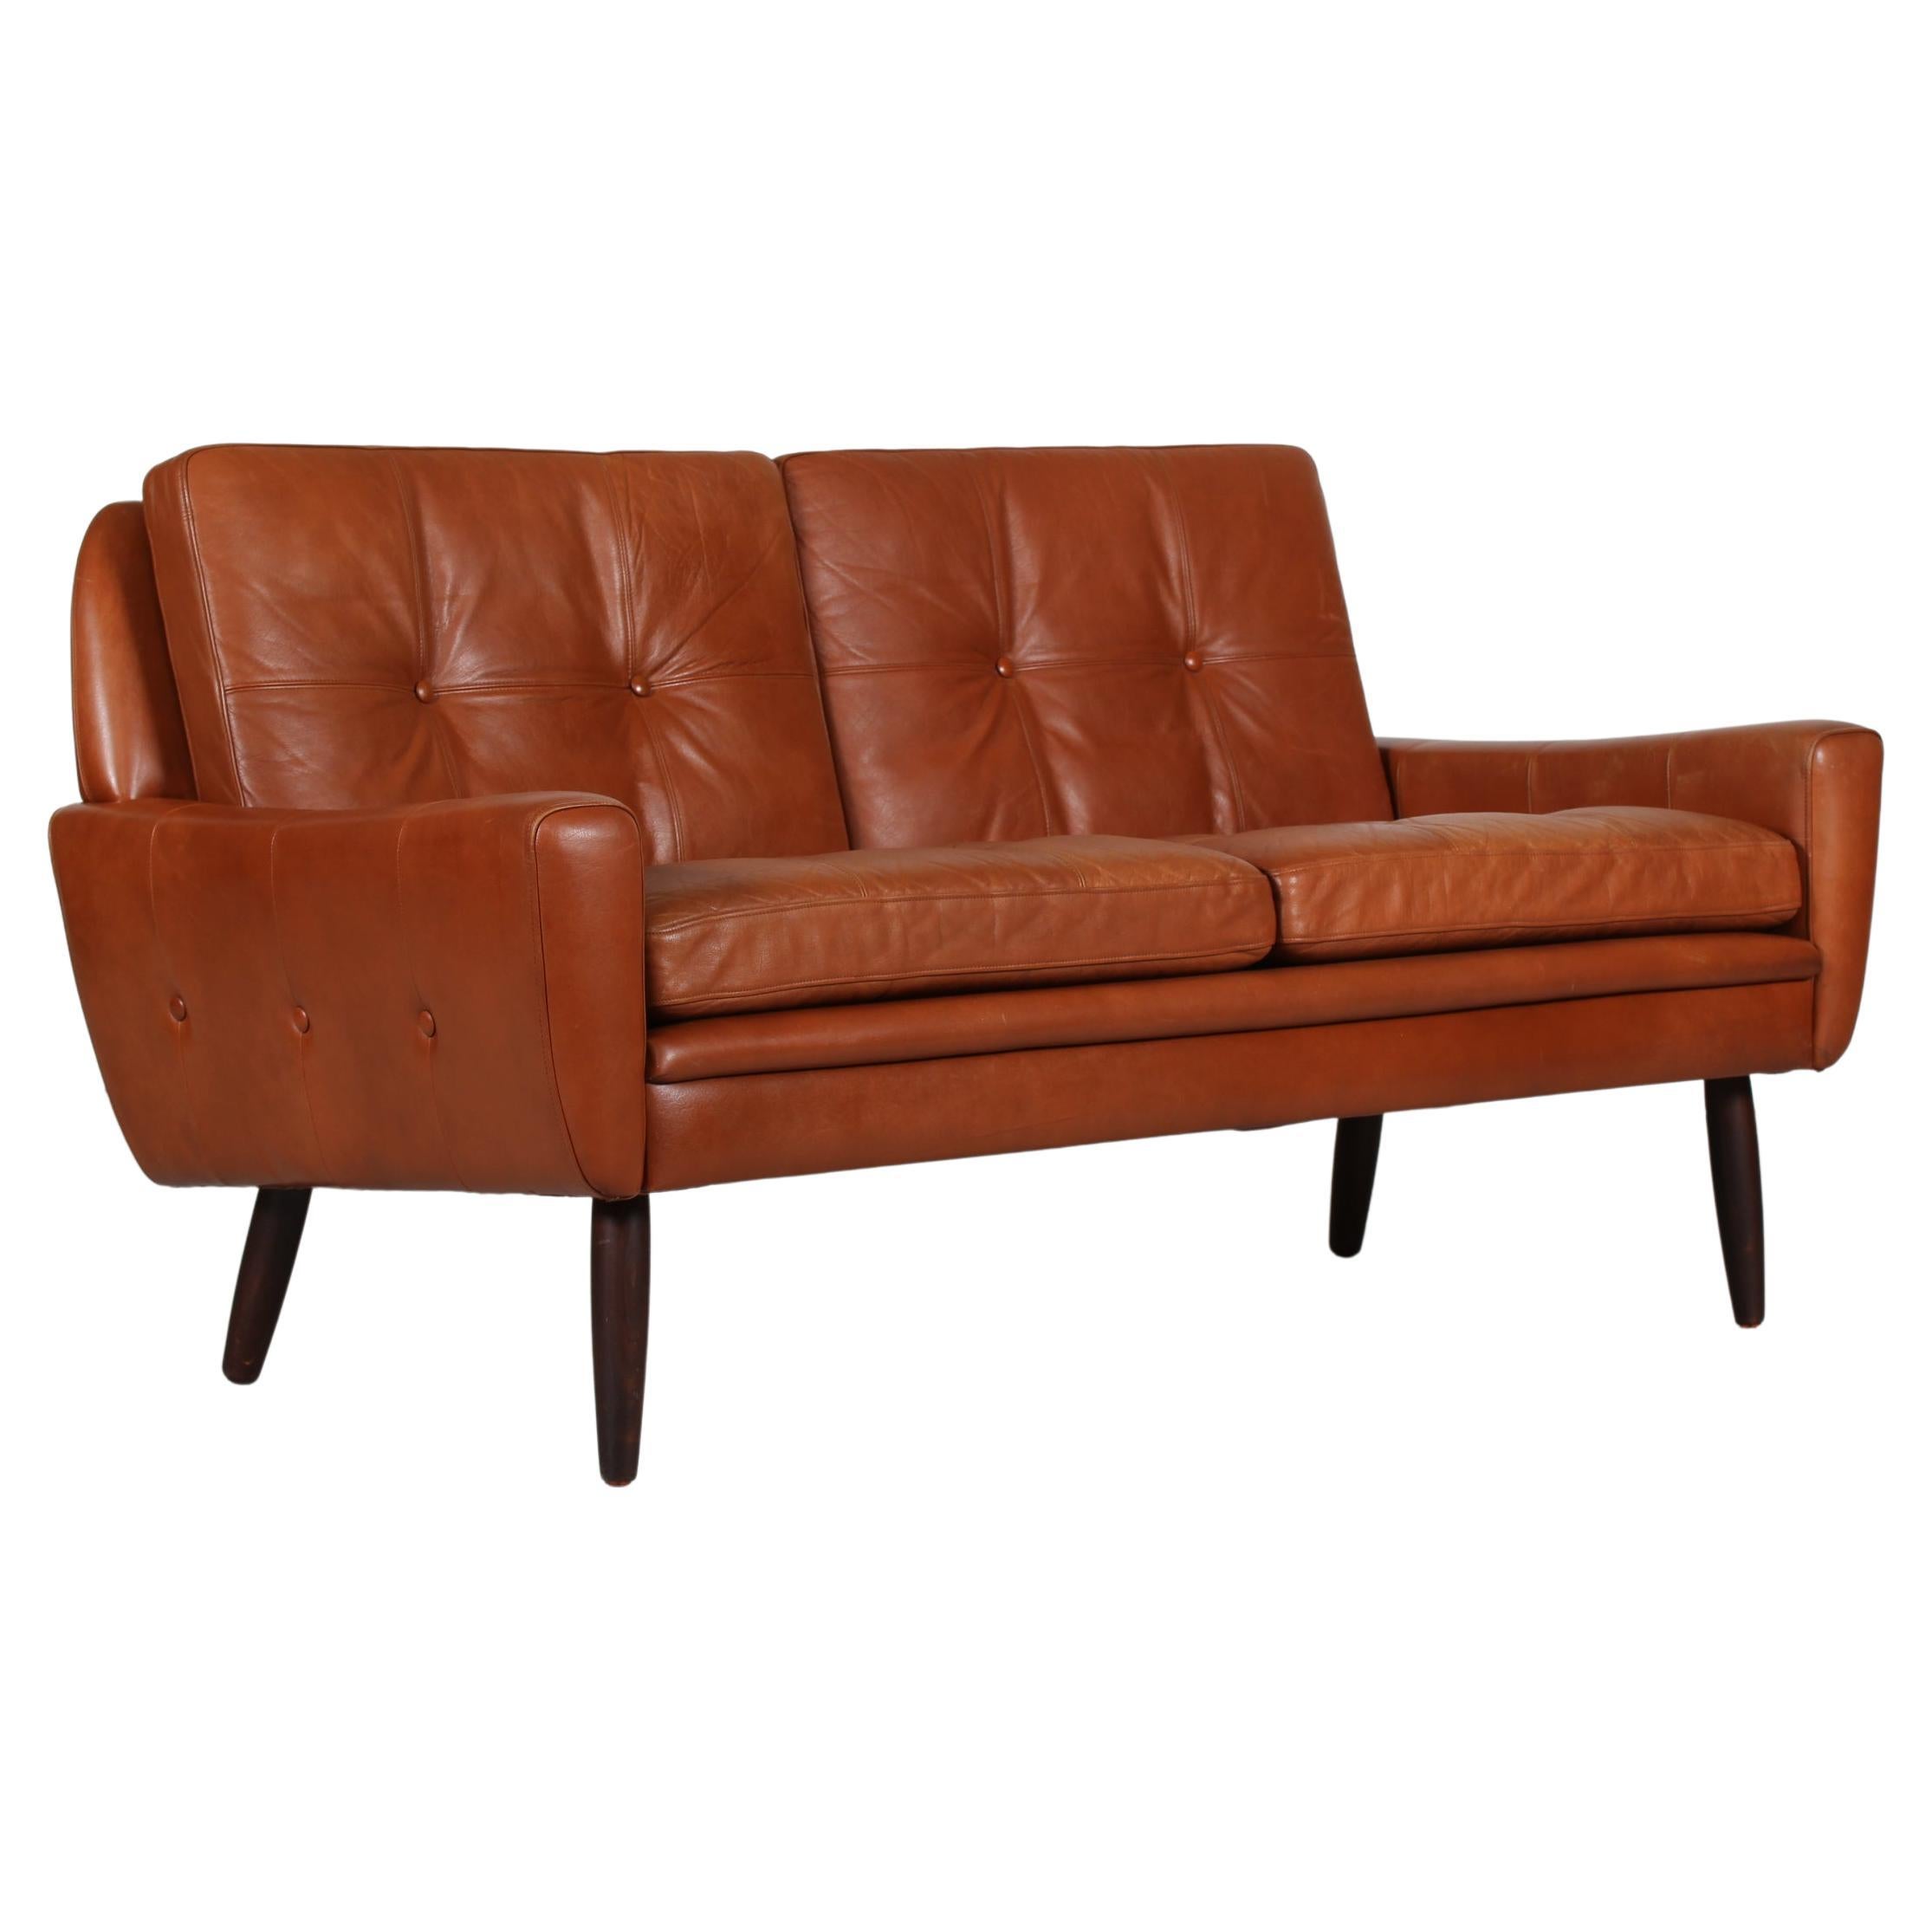 Dänisches modernes Zweisitzer-Sofa mit cognacfarbenem Leder, hergestellt in Dänemark, 1960er Jahre